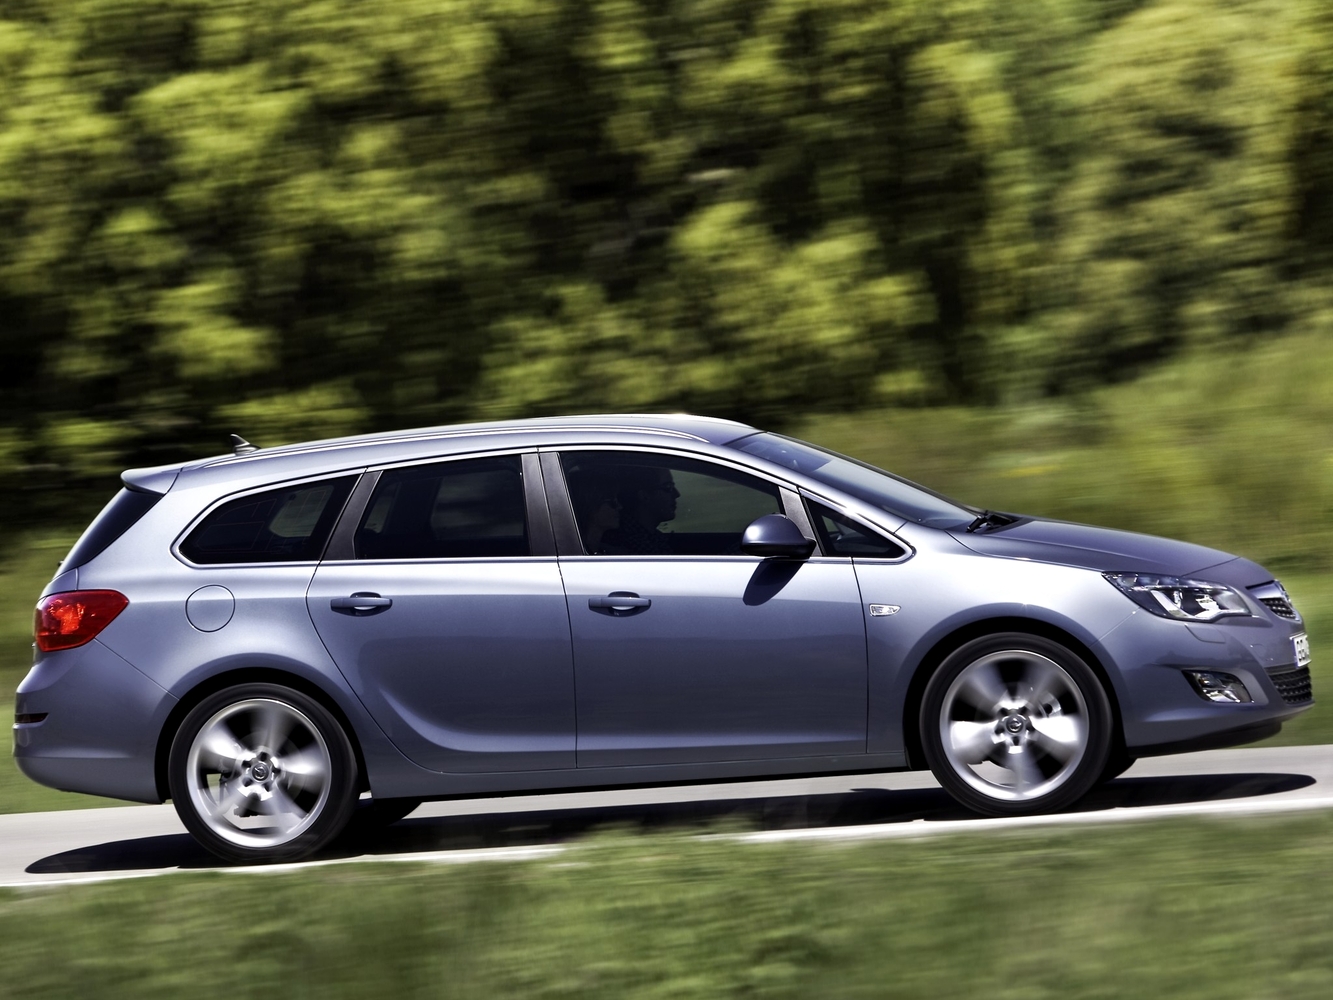 универсал Sports Tourer Opel Astra 2010 - 2012г выпуска модификация 1.2 MT (95 л.с.)